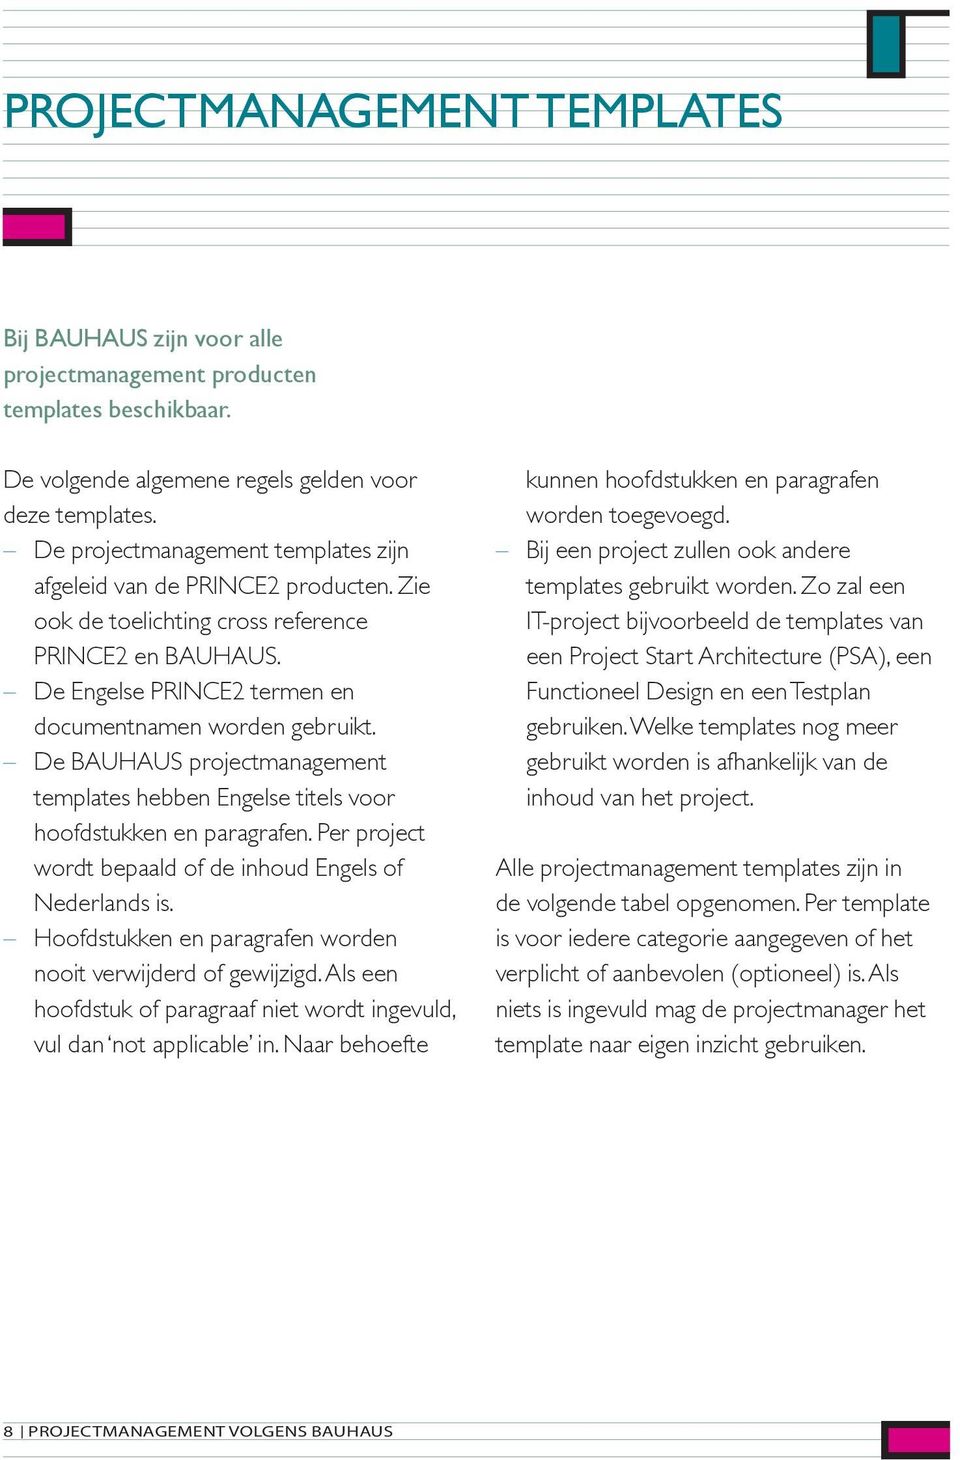 De BAUHAUS projectmanagement templates hebben Engelse titels voor hoofdstukken en paragrafen. Per project wordt bepaald of de inhoud Engels of Nederlands is.